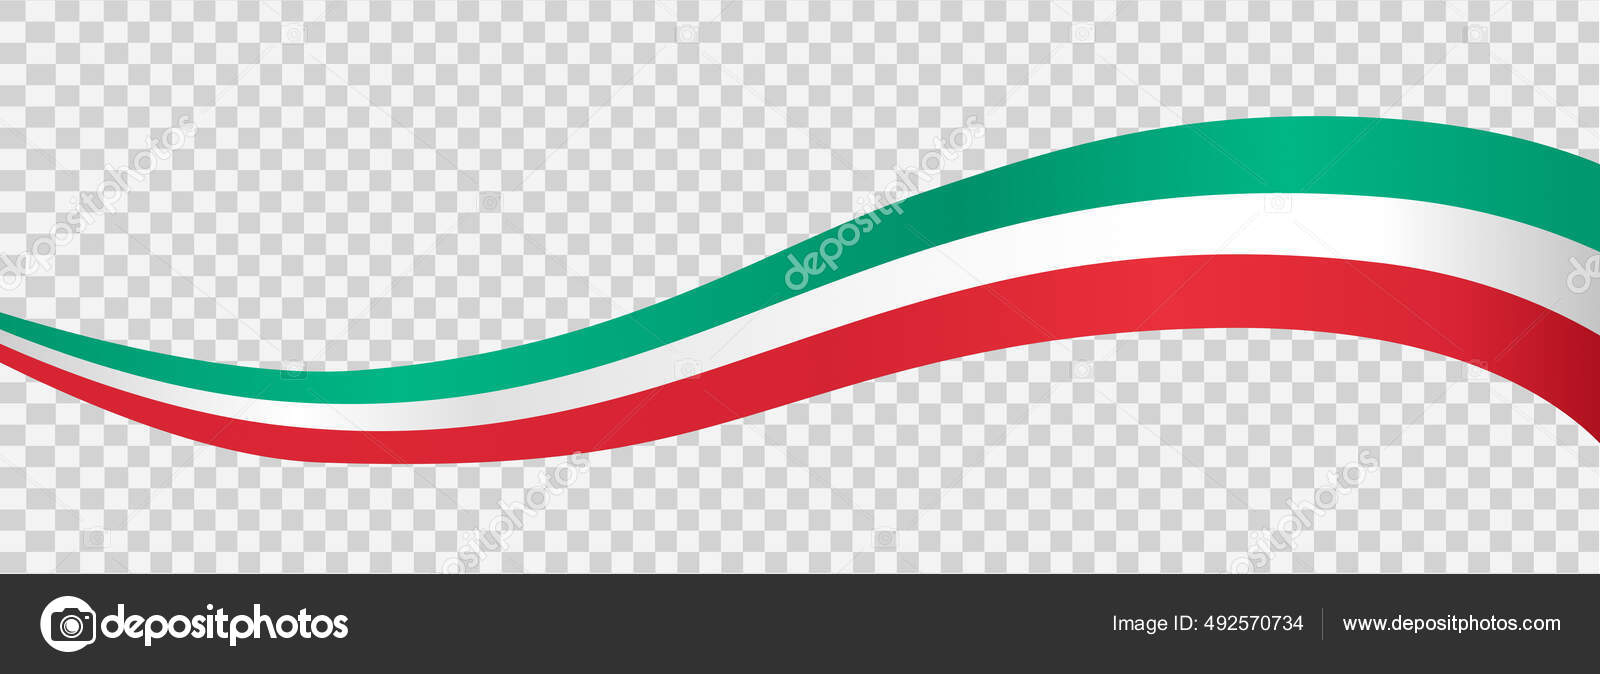 Acenando Bandeira Itália Isolado Png Fundo Transparente Símbolo Itália  Modelo imagem vetorial de Phiradet.c© 492570734